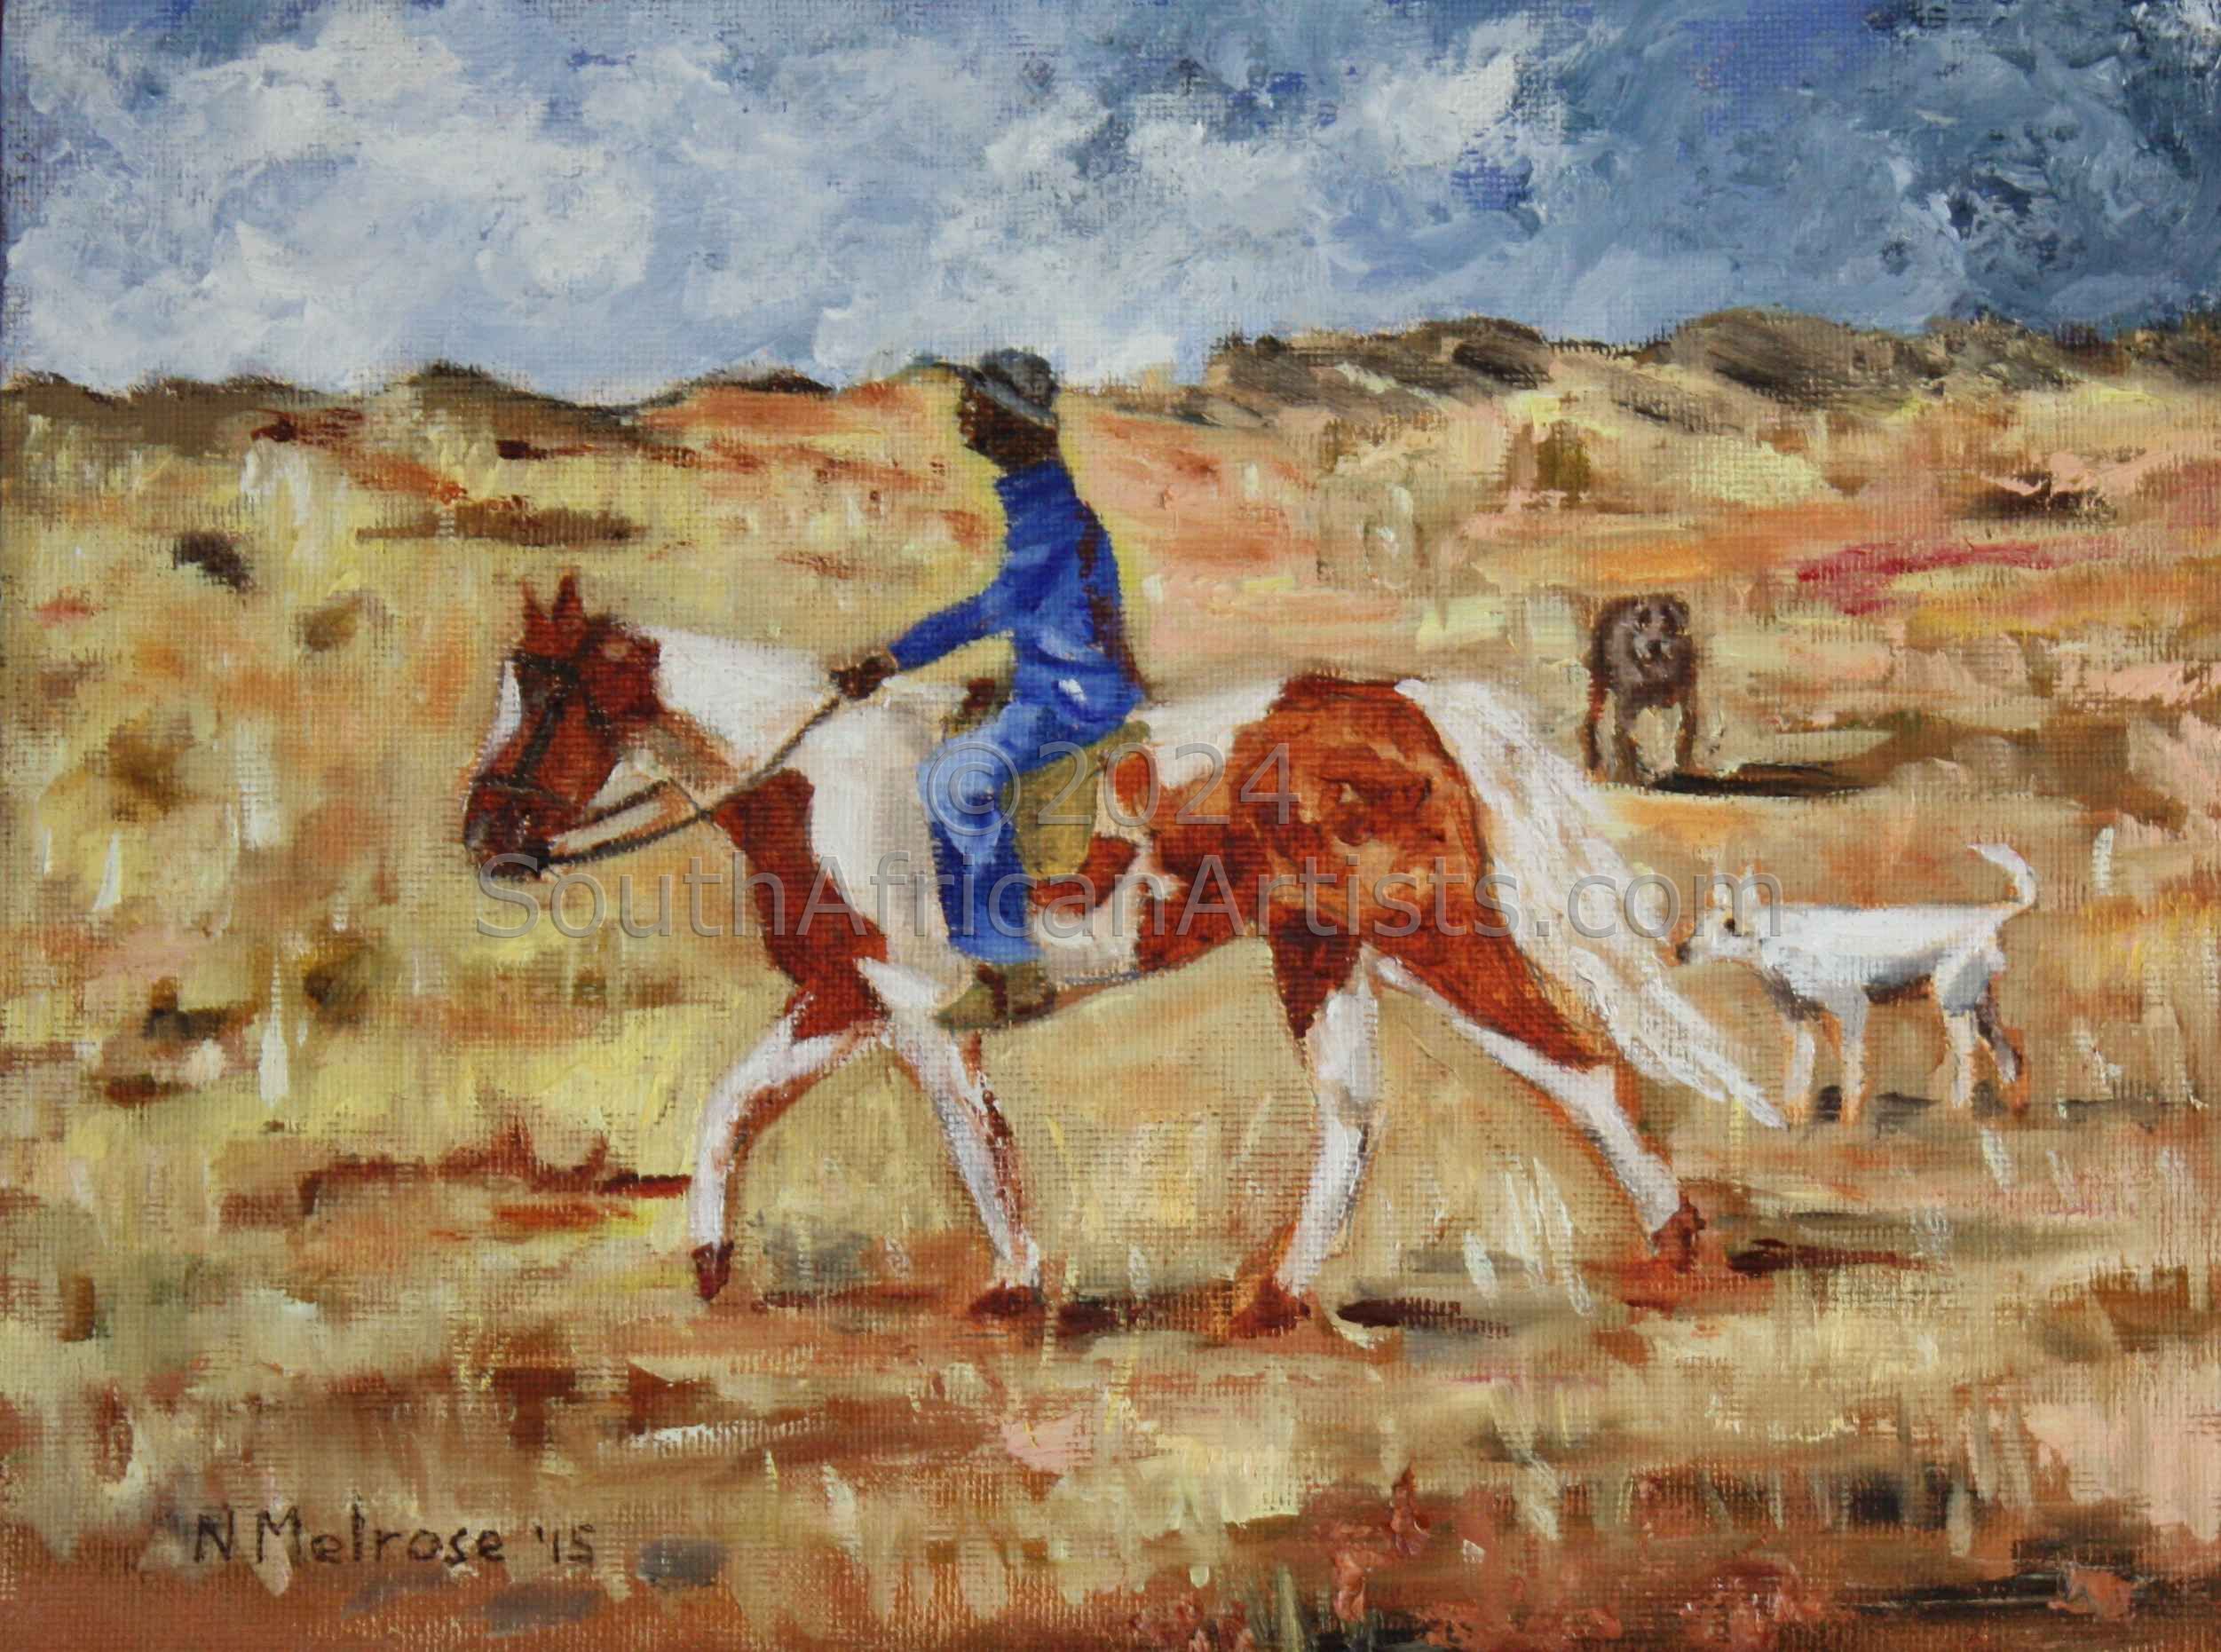 Rancher on Horseback